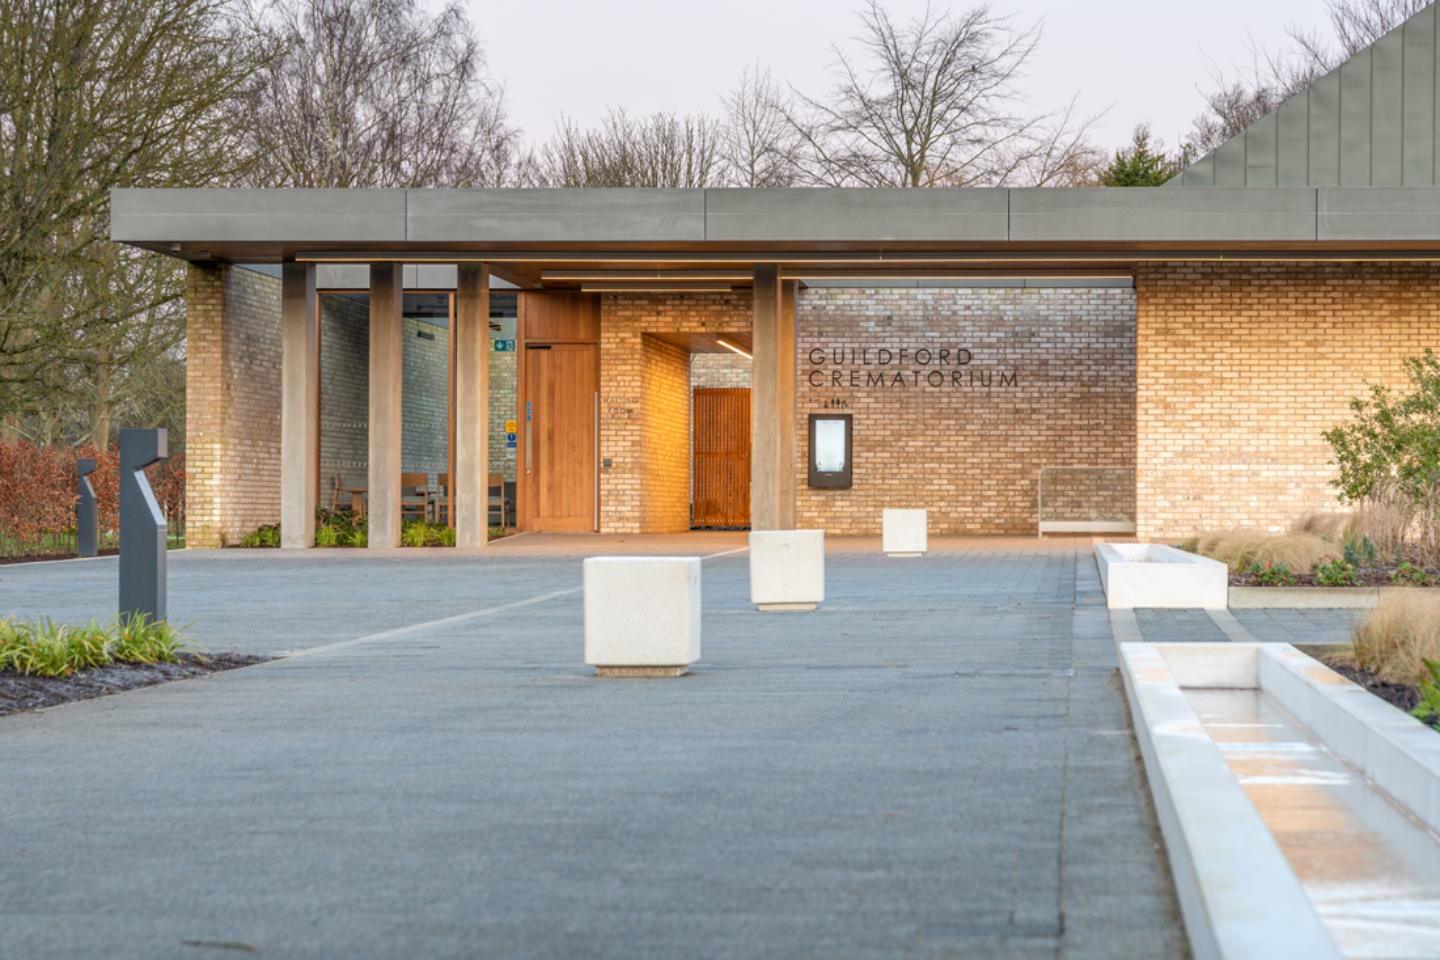 Guildford Crematorium wins SuDS Award 2022!